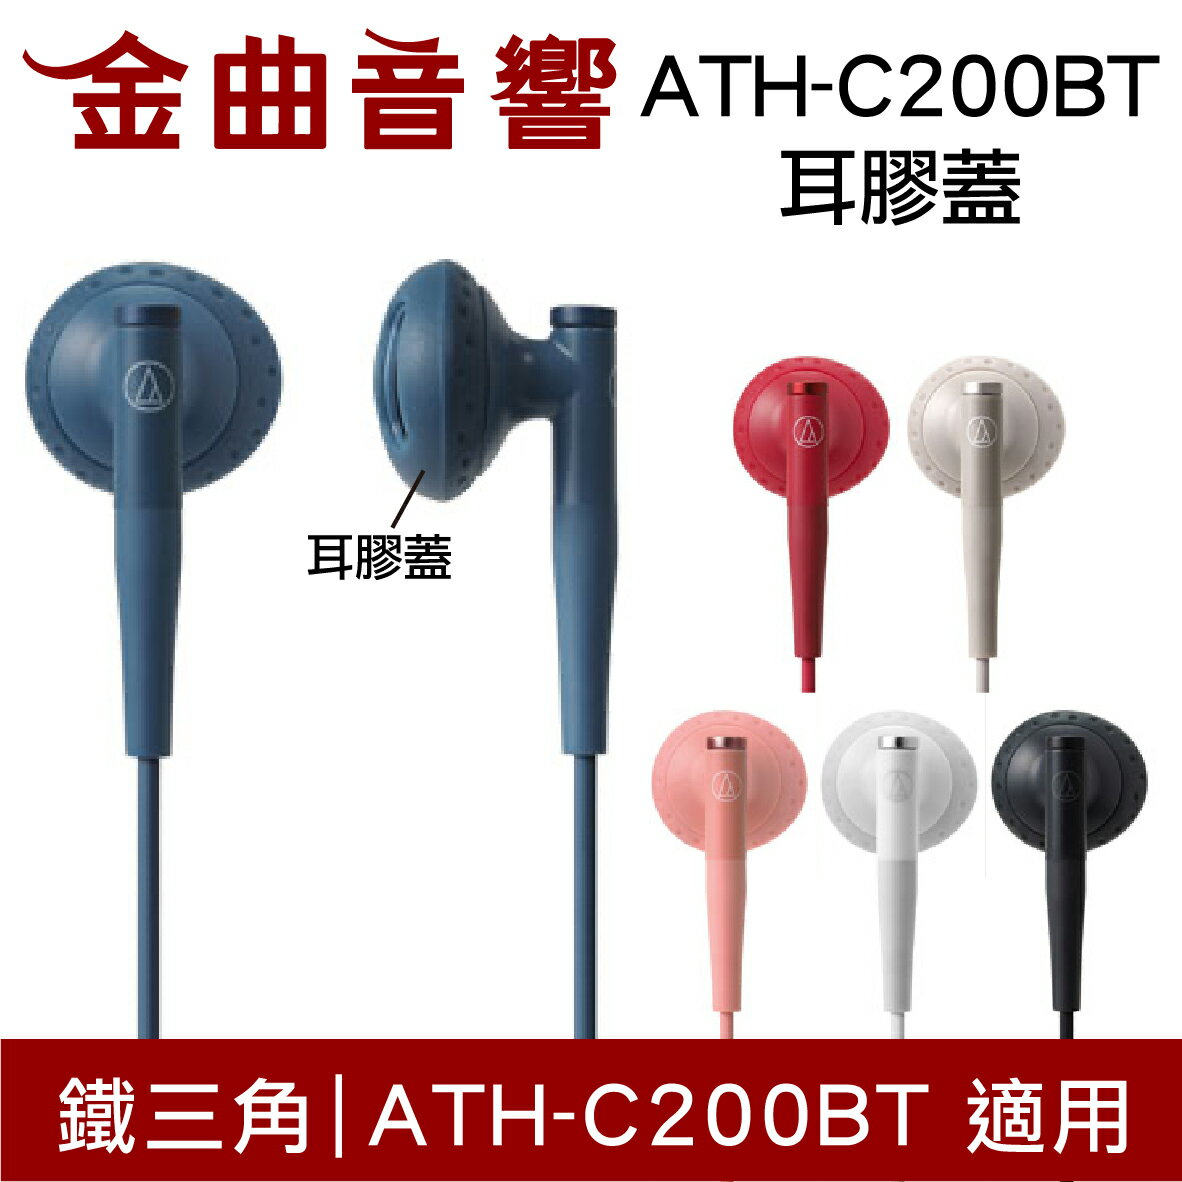 鐵三角 ATH-C200BT 耳膠蓋 一對 多色可選 | 金曲音響